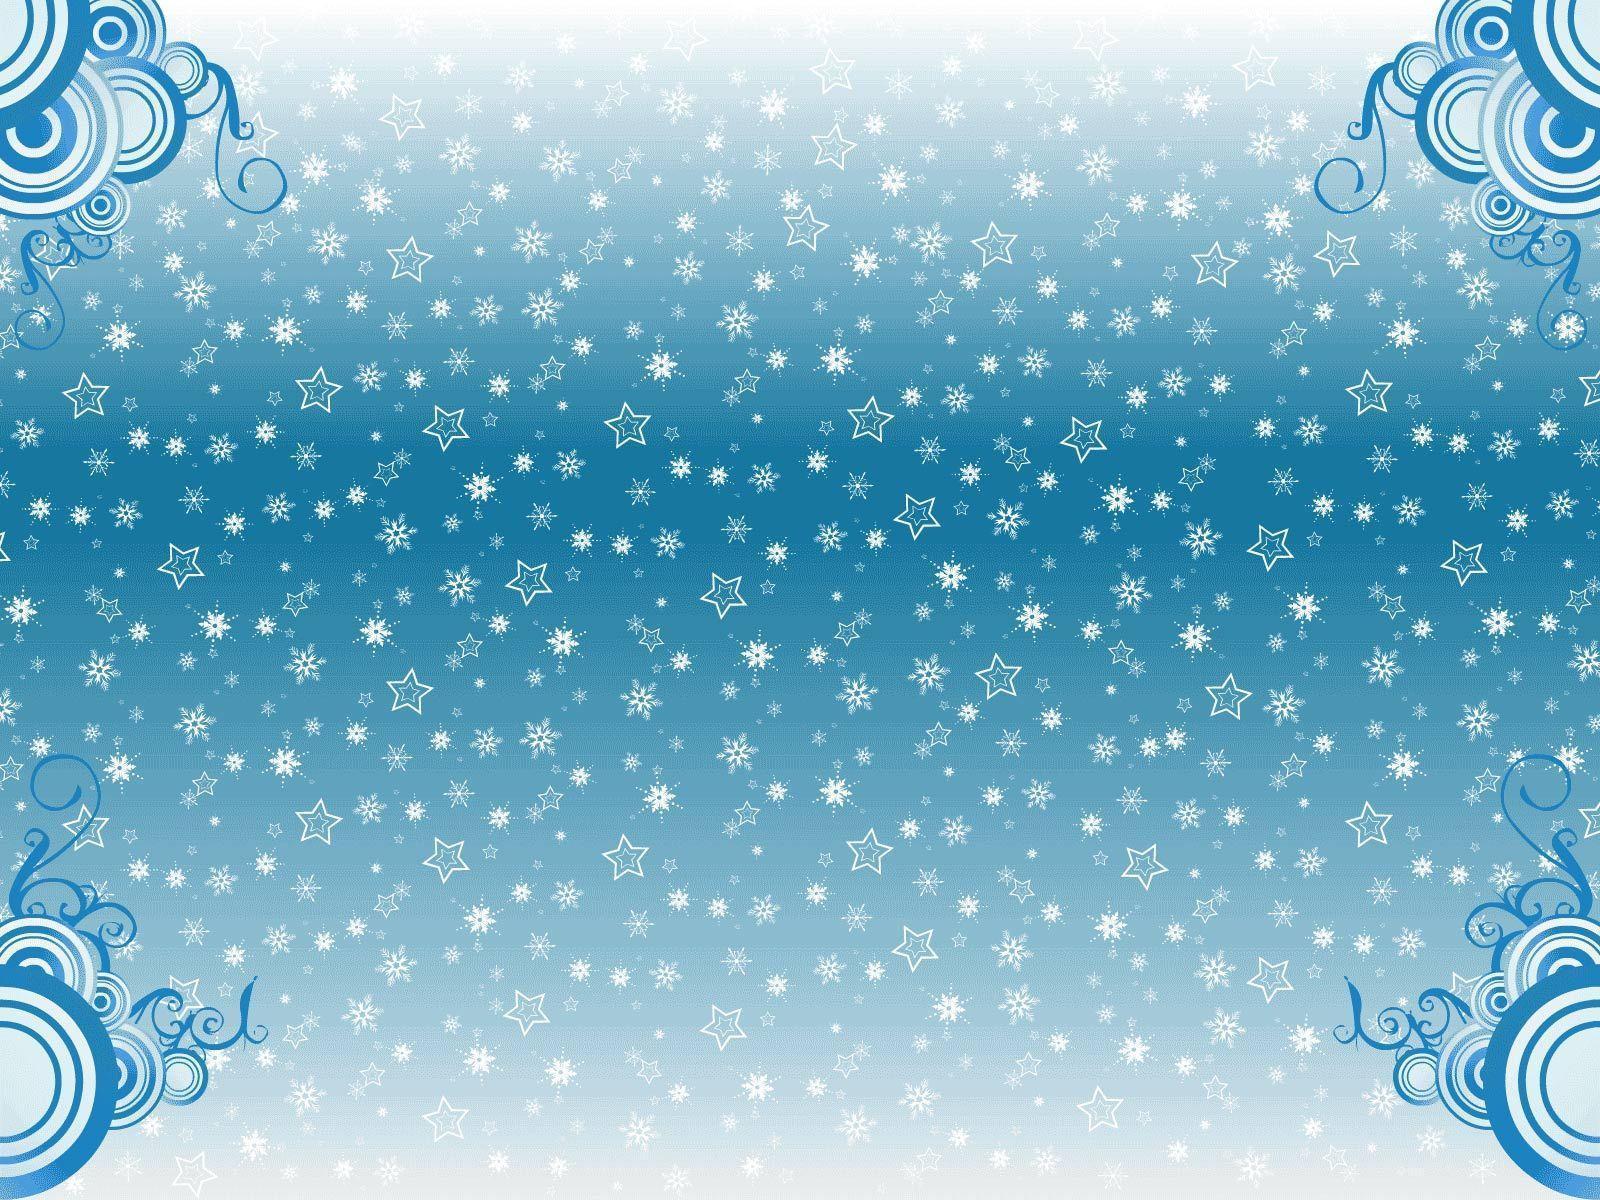 Background winter Desktop Wallpaper. High Quality Wallpaper